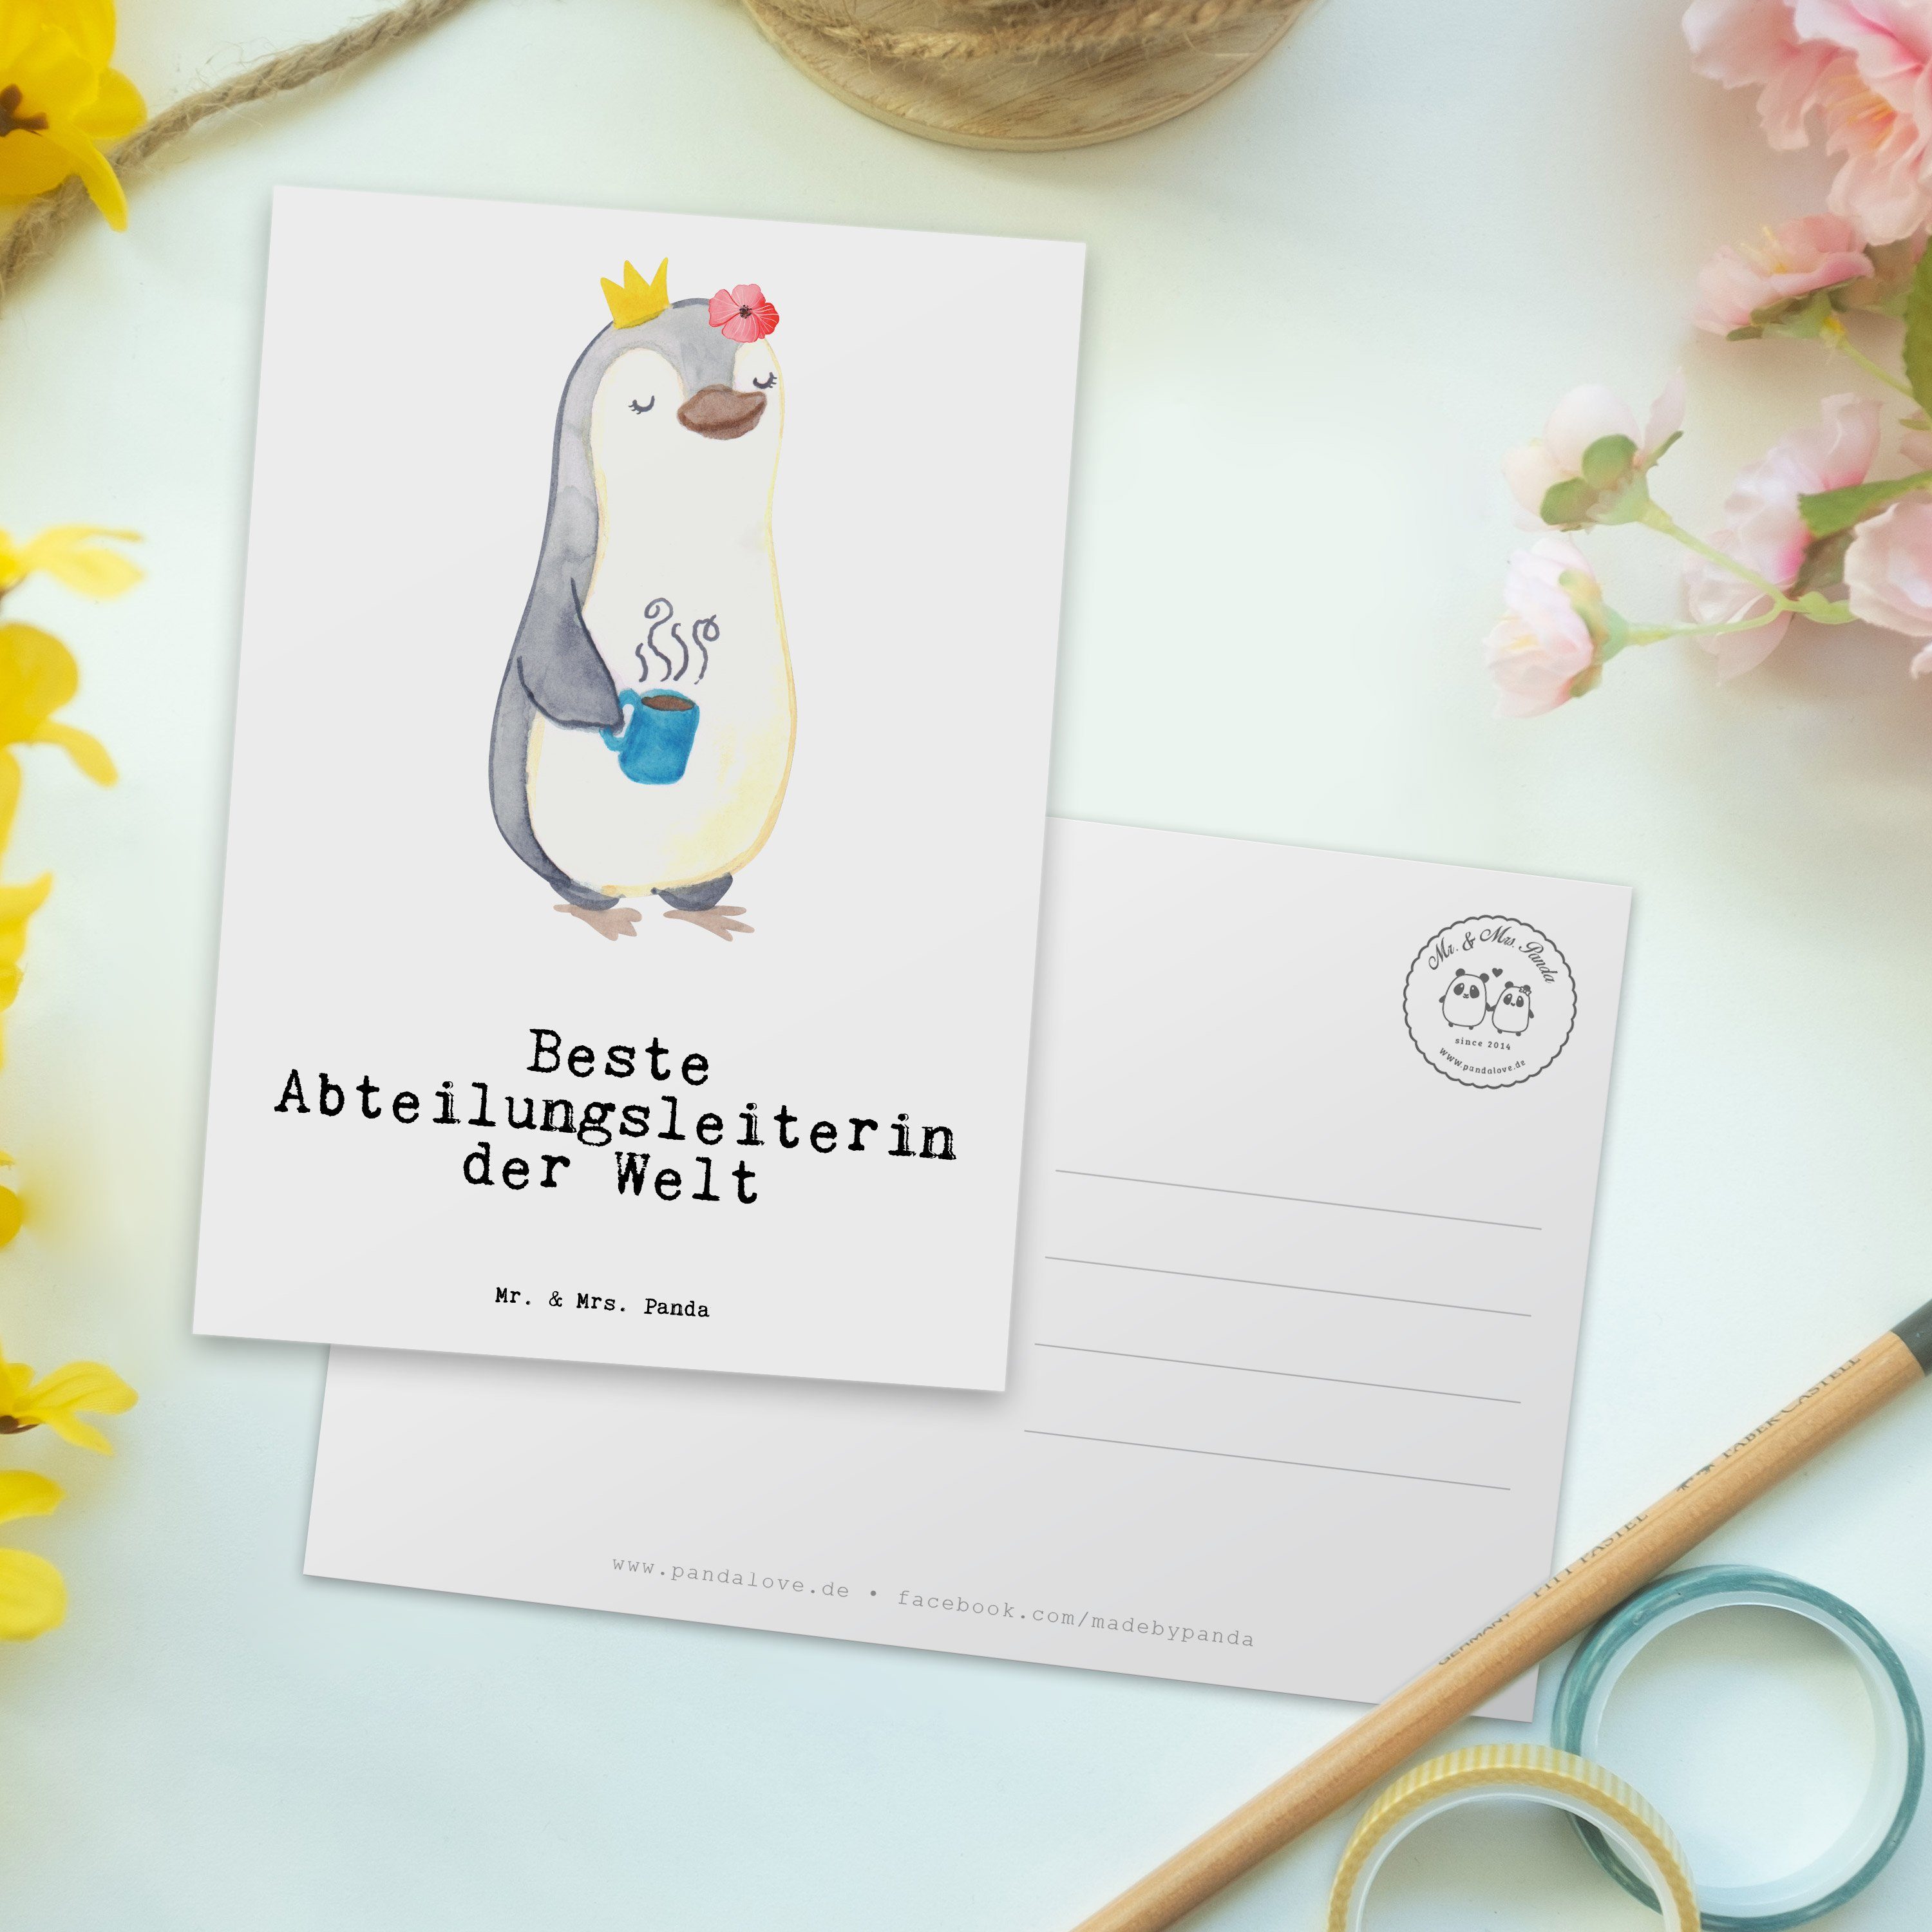 Mr. & Geschenk, Mrs. Abteilungsleiterin Welt A - Panda - der Beste Pinguin Danke, Postkarte Weiß